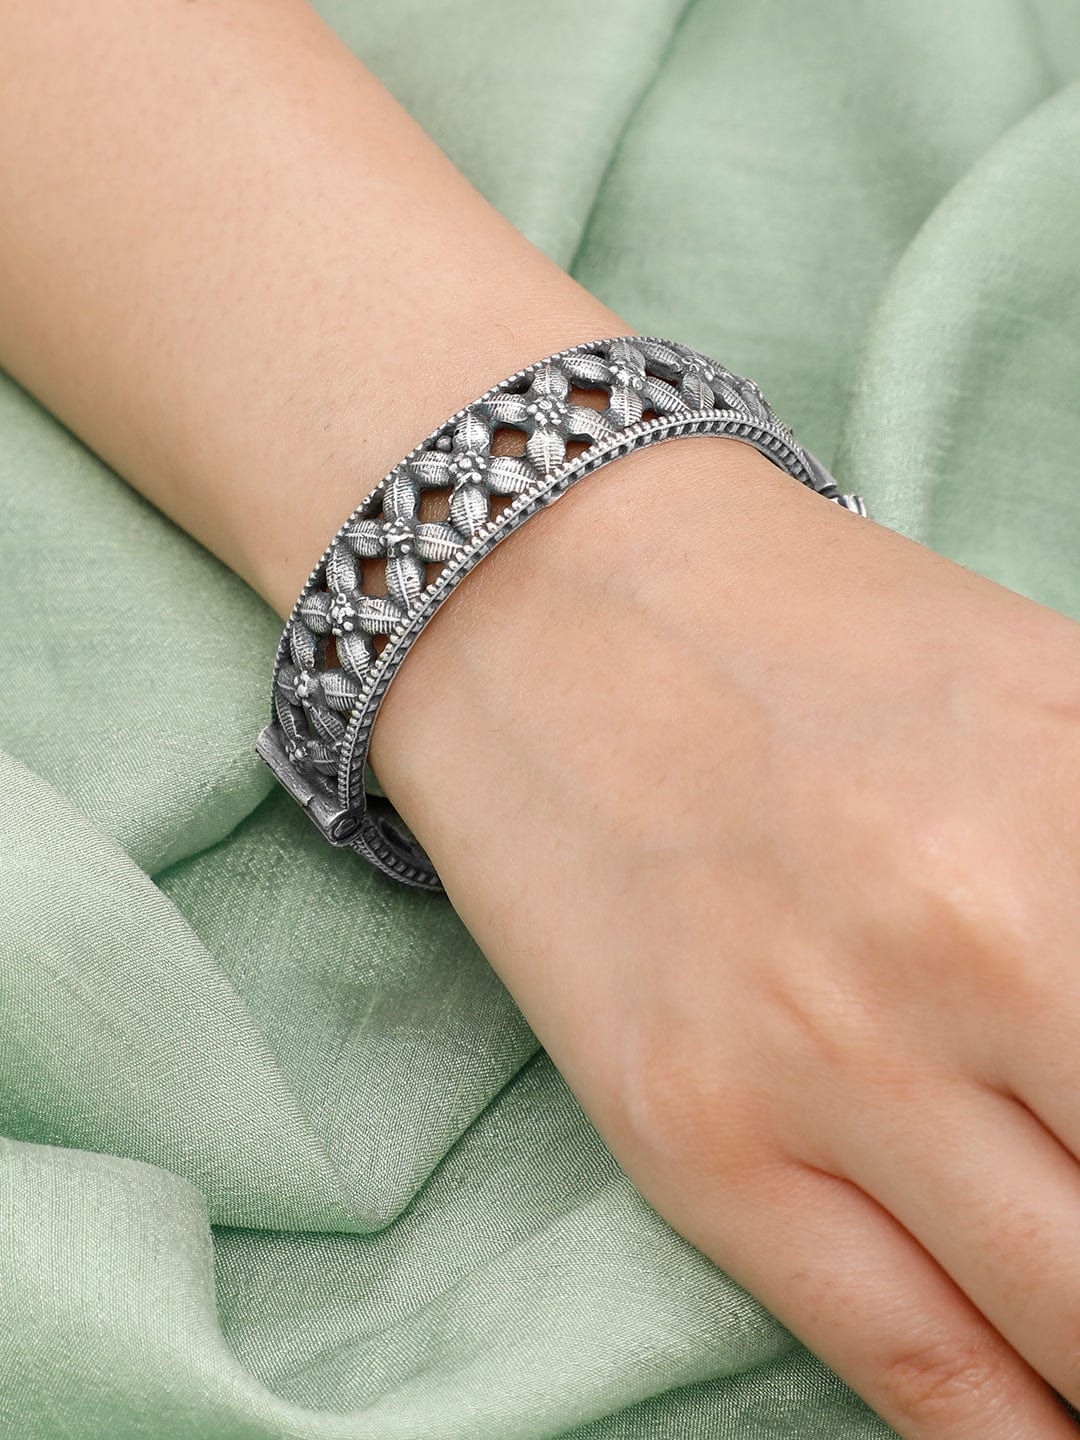 Rubans Oxidised Silver Floral Bracelet. Bangles & Bracelets